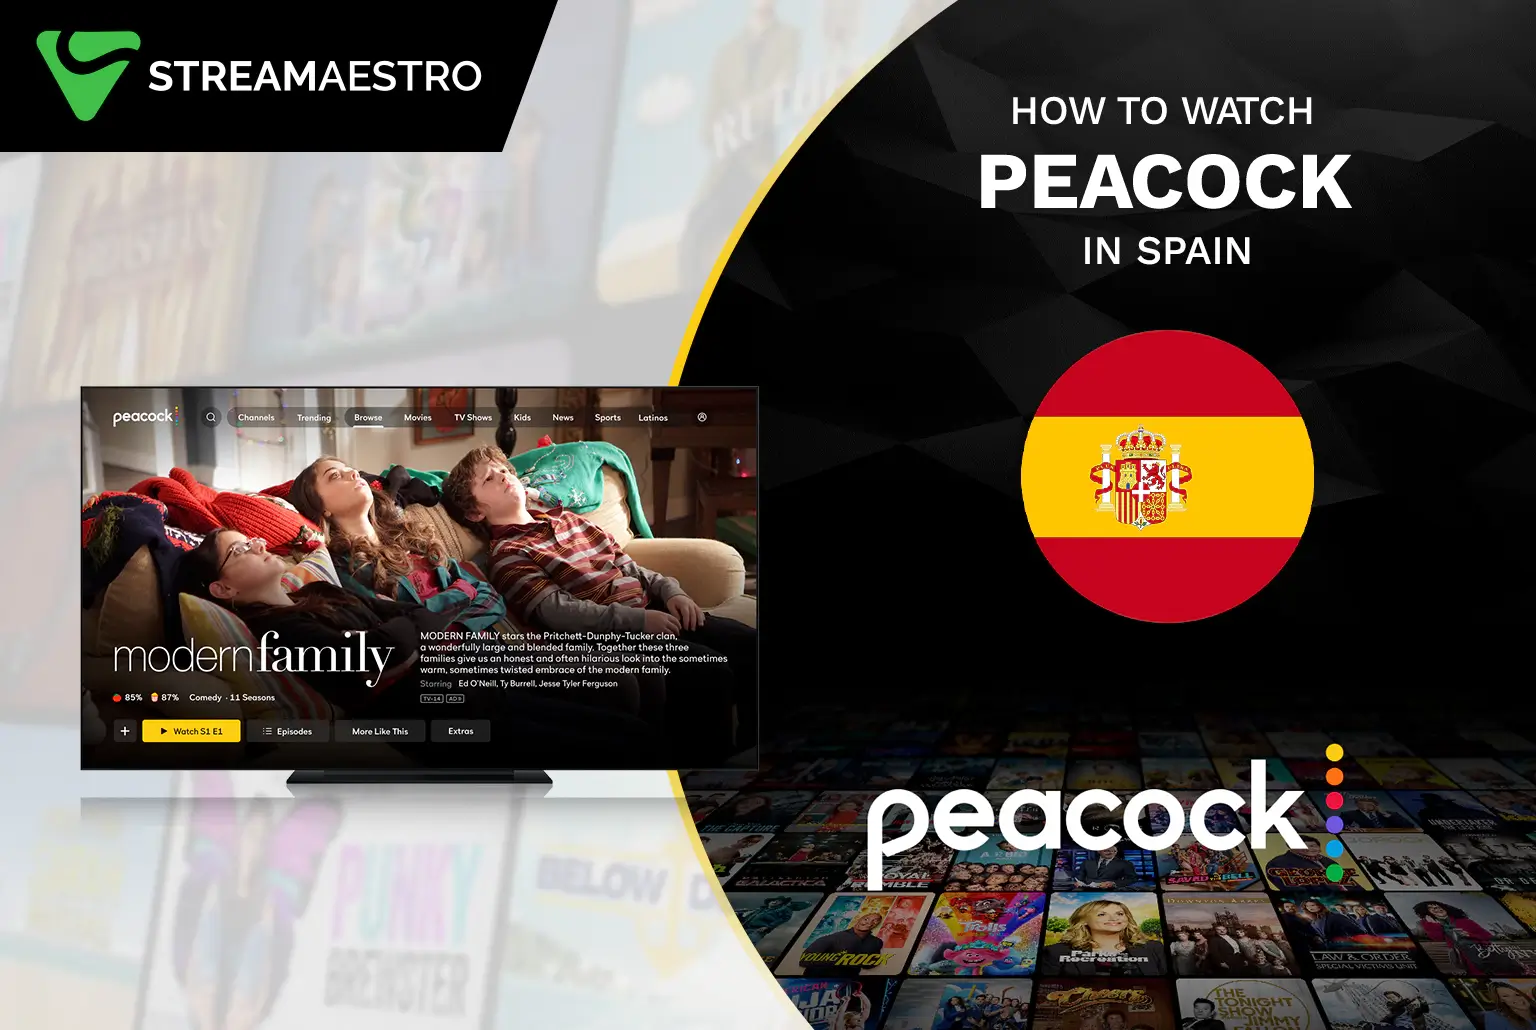 Peacock TV in Spain